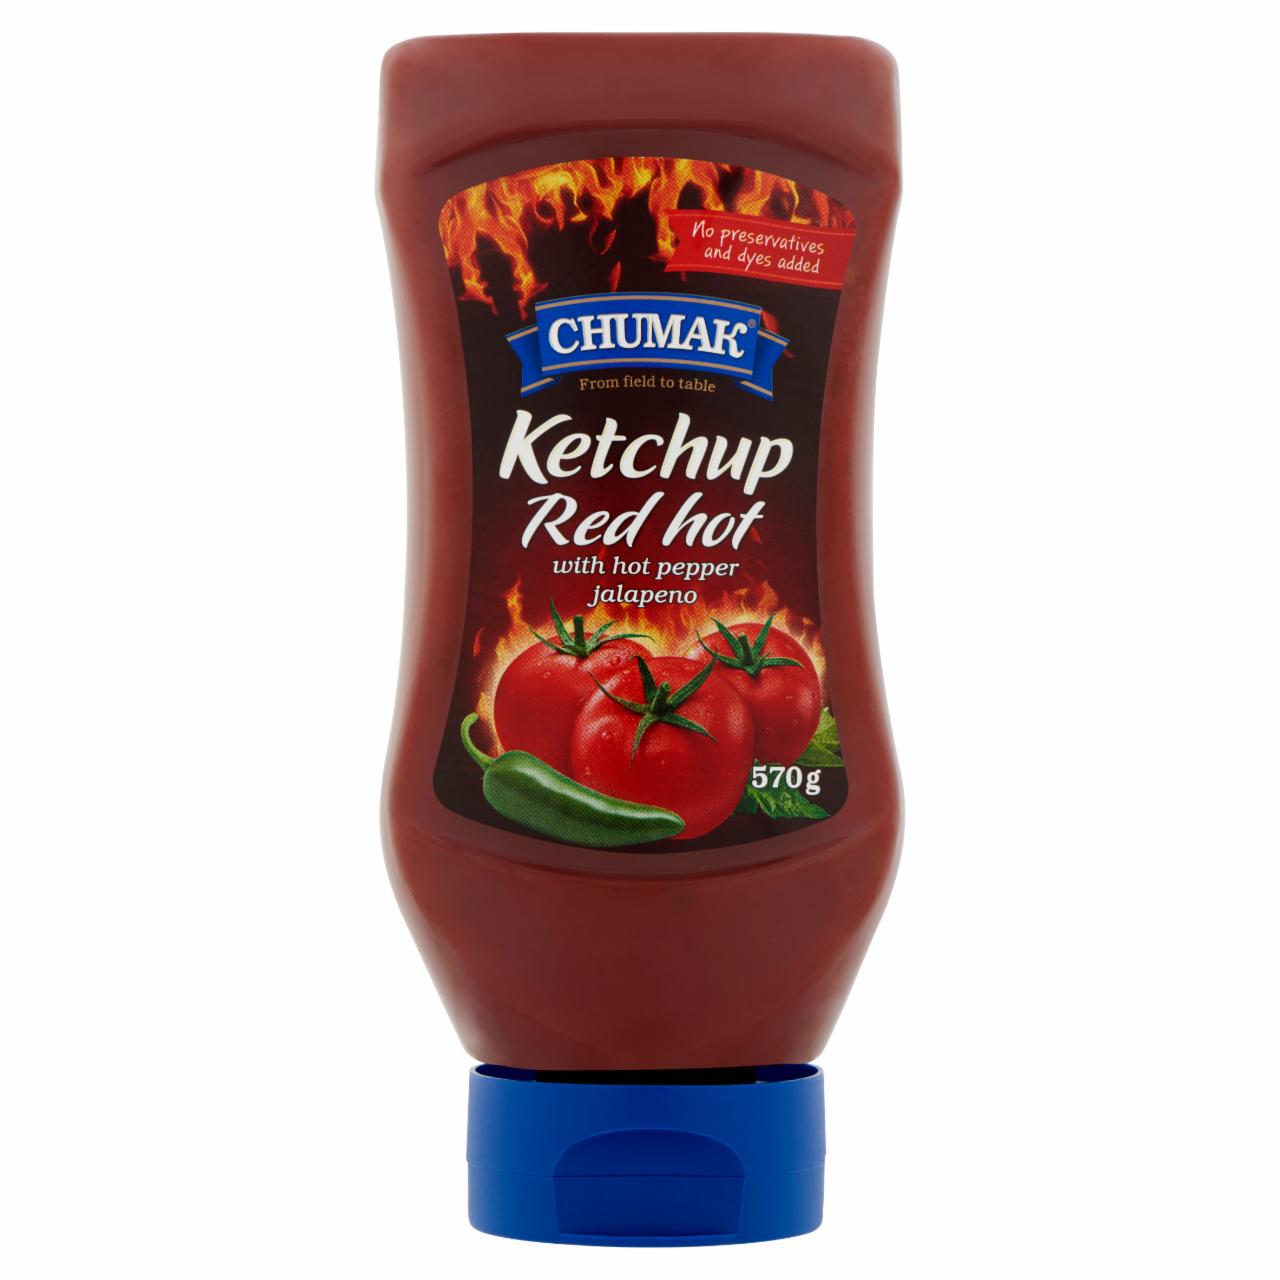 Képek - Chumak Red Hot nagyon csípős ketchup 570 g